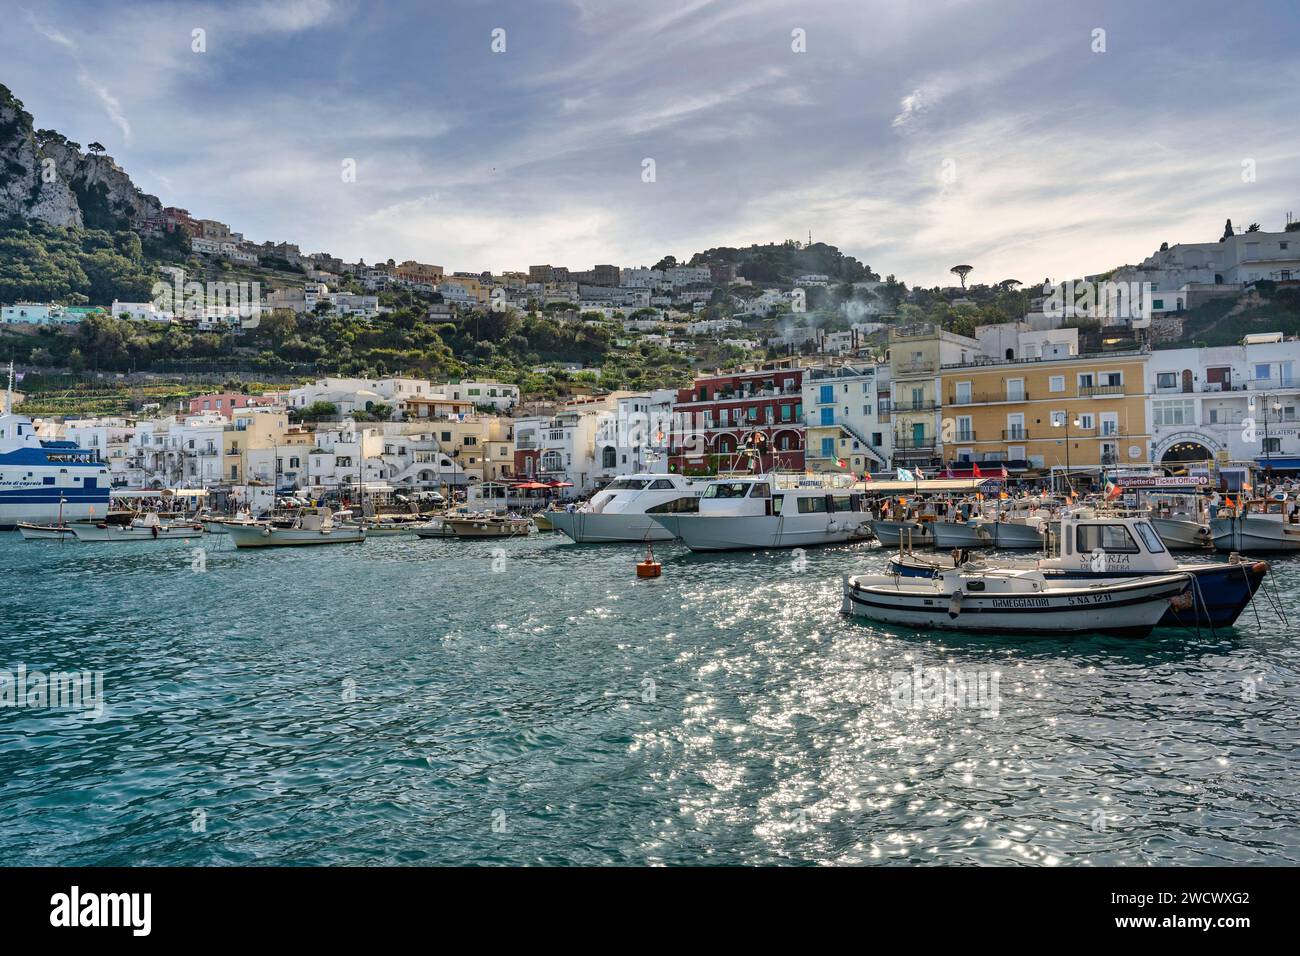 Italy, Campania, the Bay of Naples, Capri island, the port of Capri Stock Photo